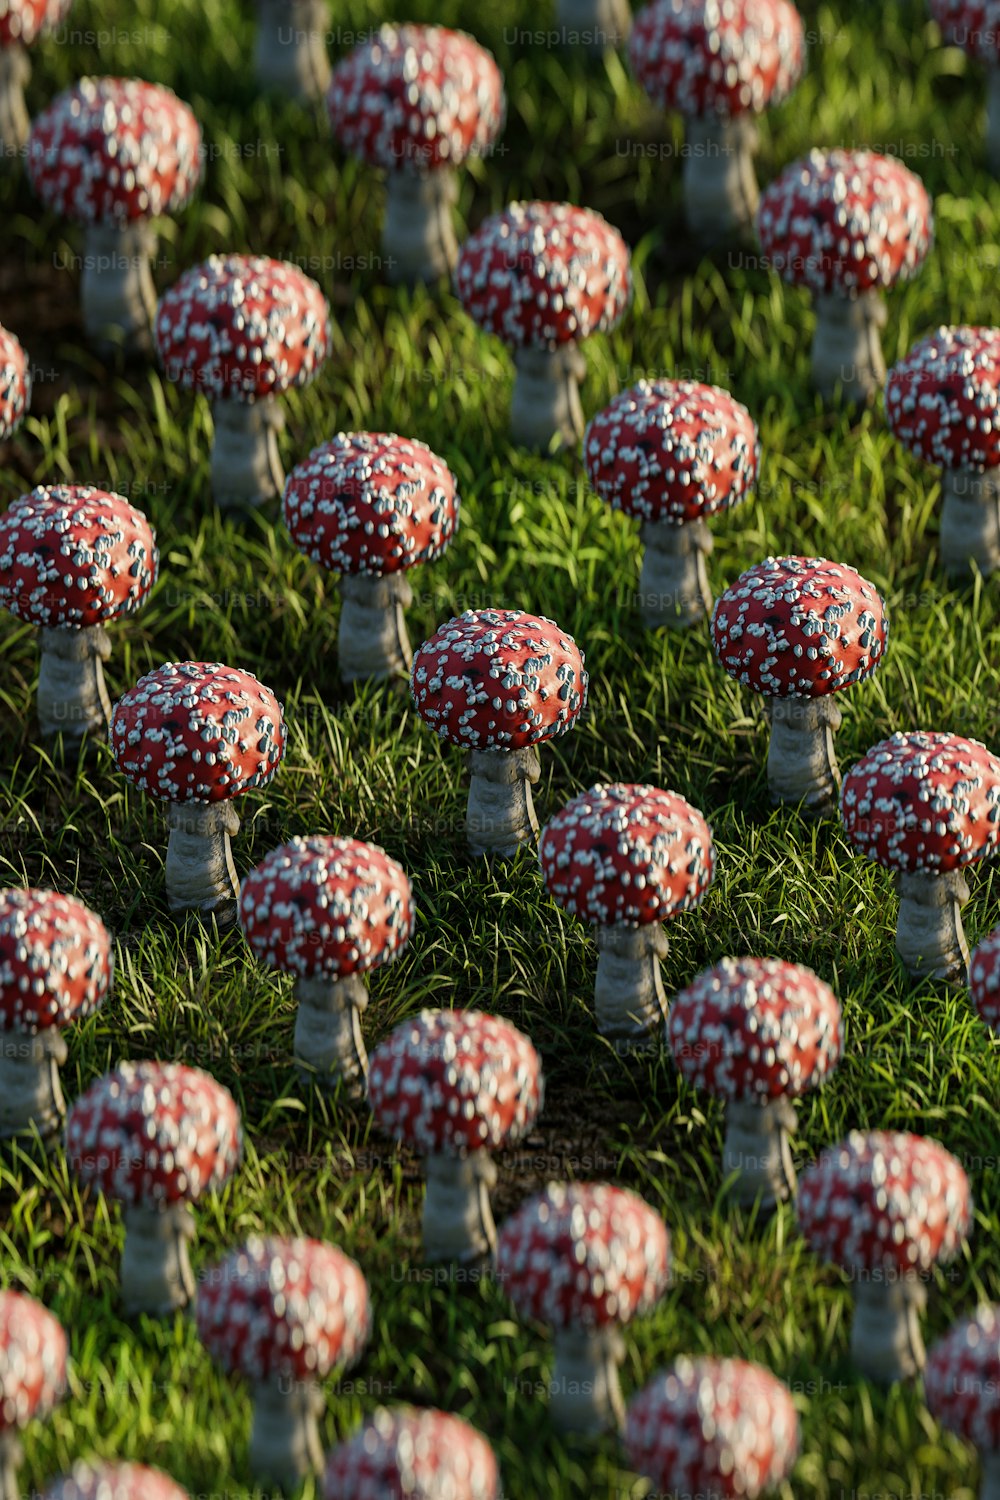 작은 빨간색과 흰색 버섯이 가득한 들판